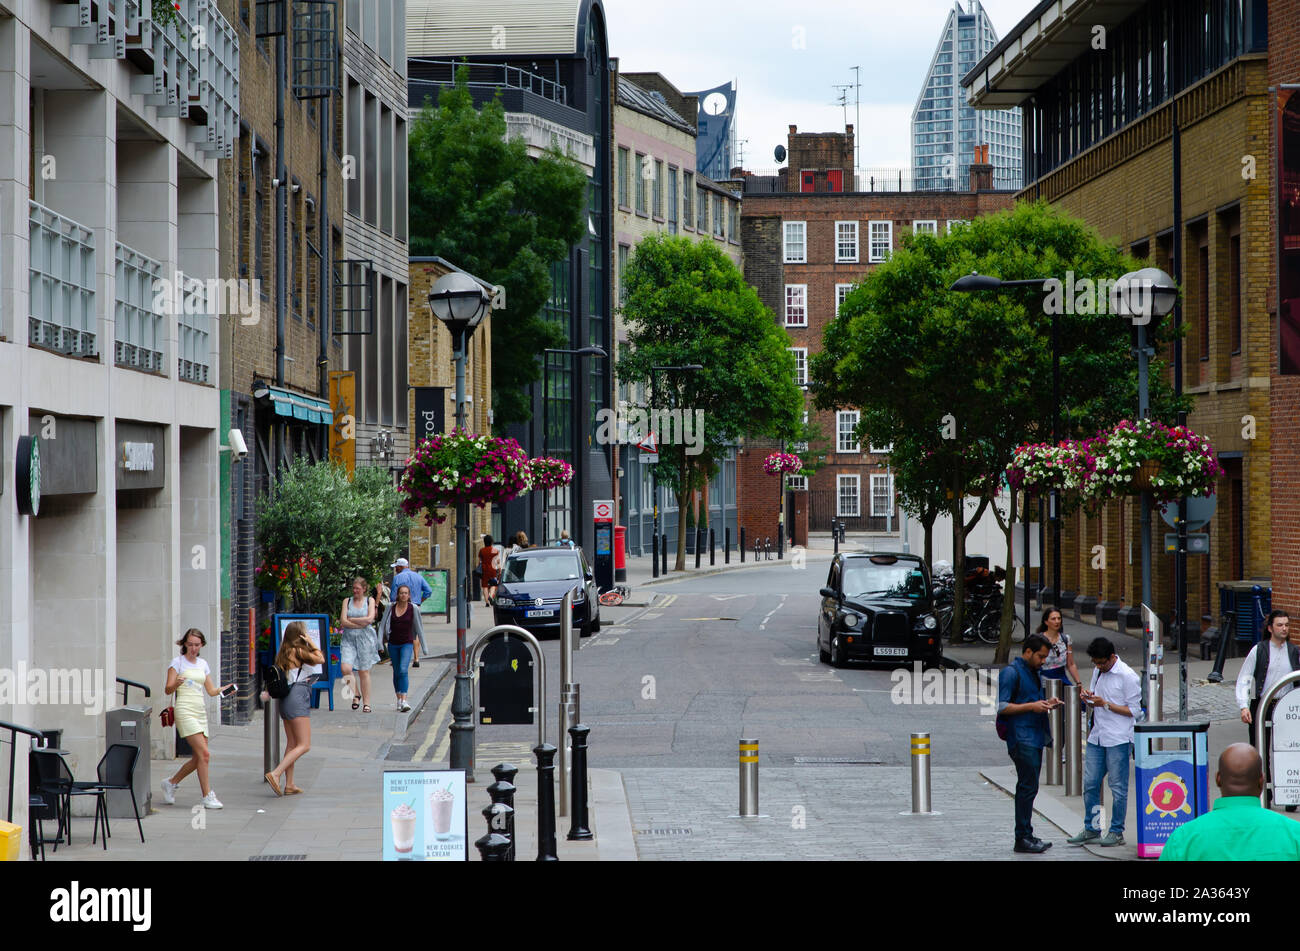 Schöne London Street mit Blumen, Menschen, grüne Bäume und geparkte Black Cab. Foto zeigt 'New Globe walk' Street, in der Nähe des Shakespeare's Globe Theatre Stockfoto